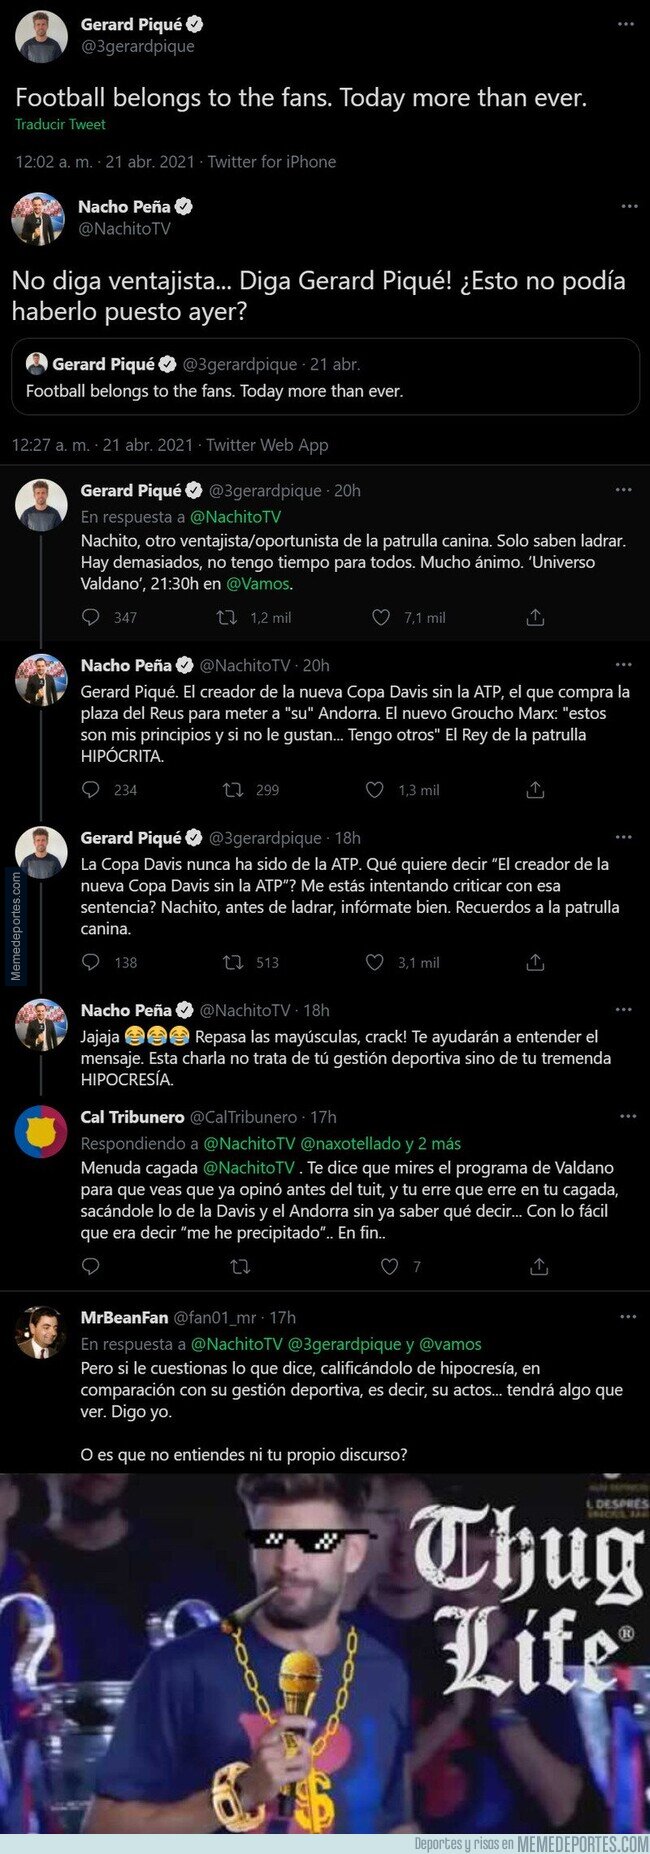 1133409 - Gerard Piqué acaba de destrozar por completo al 'periodista' Nacho Peña con todos estos tuits